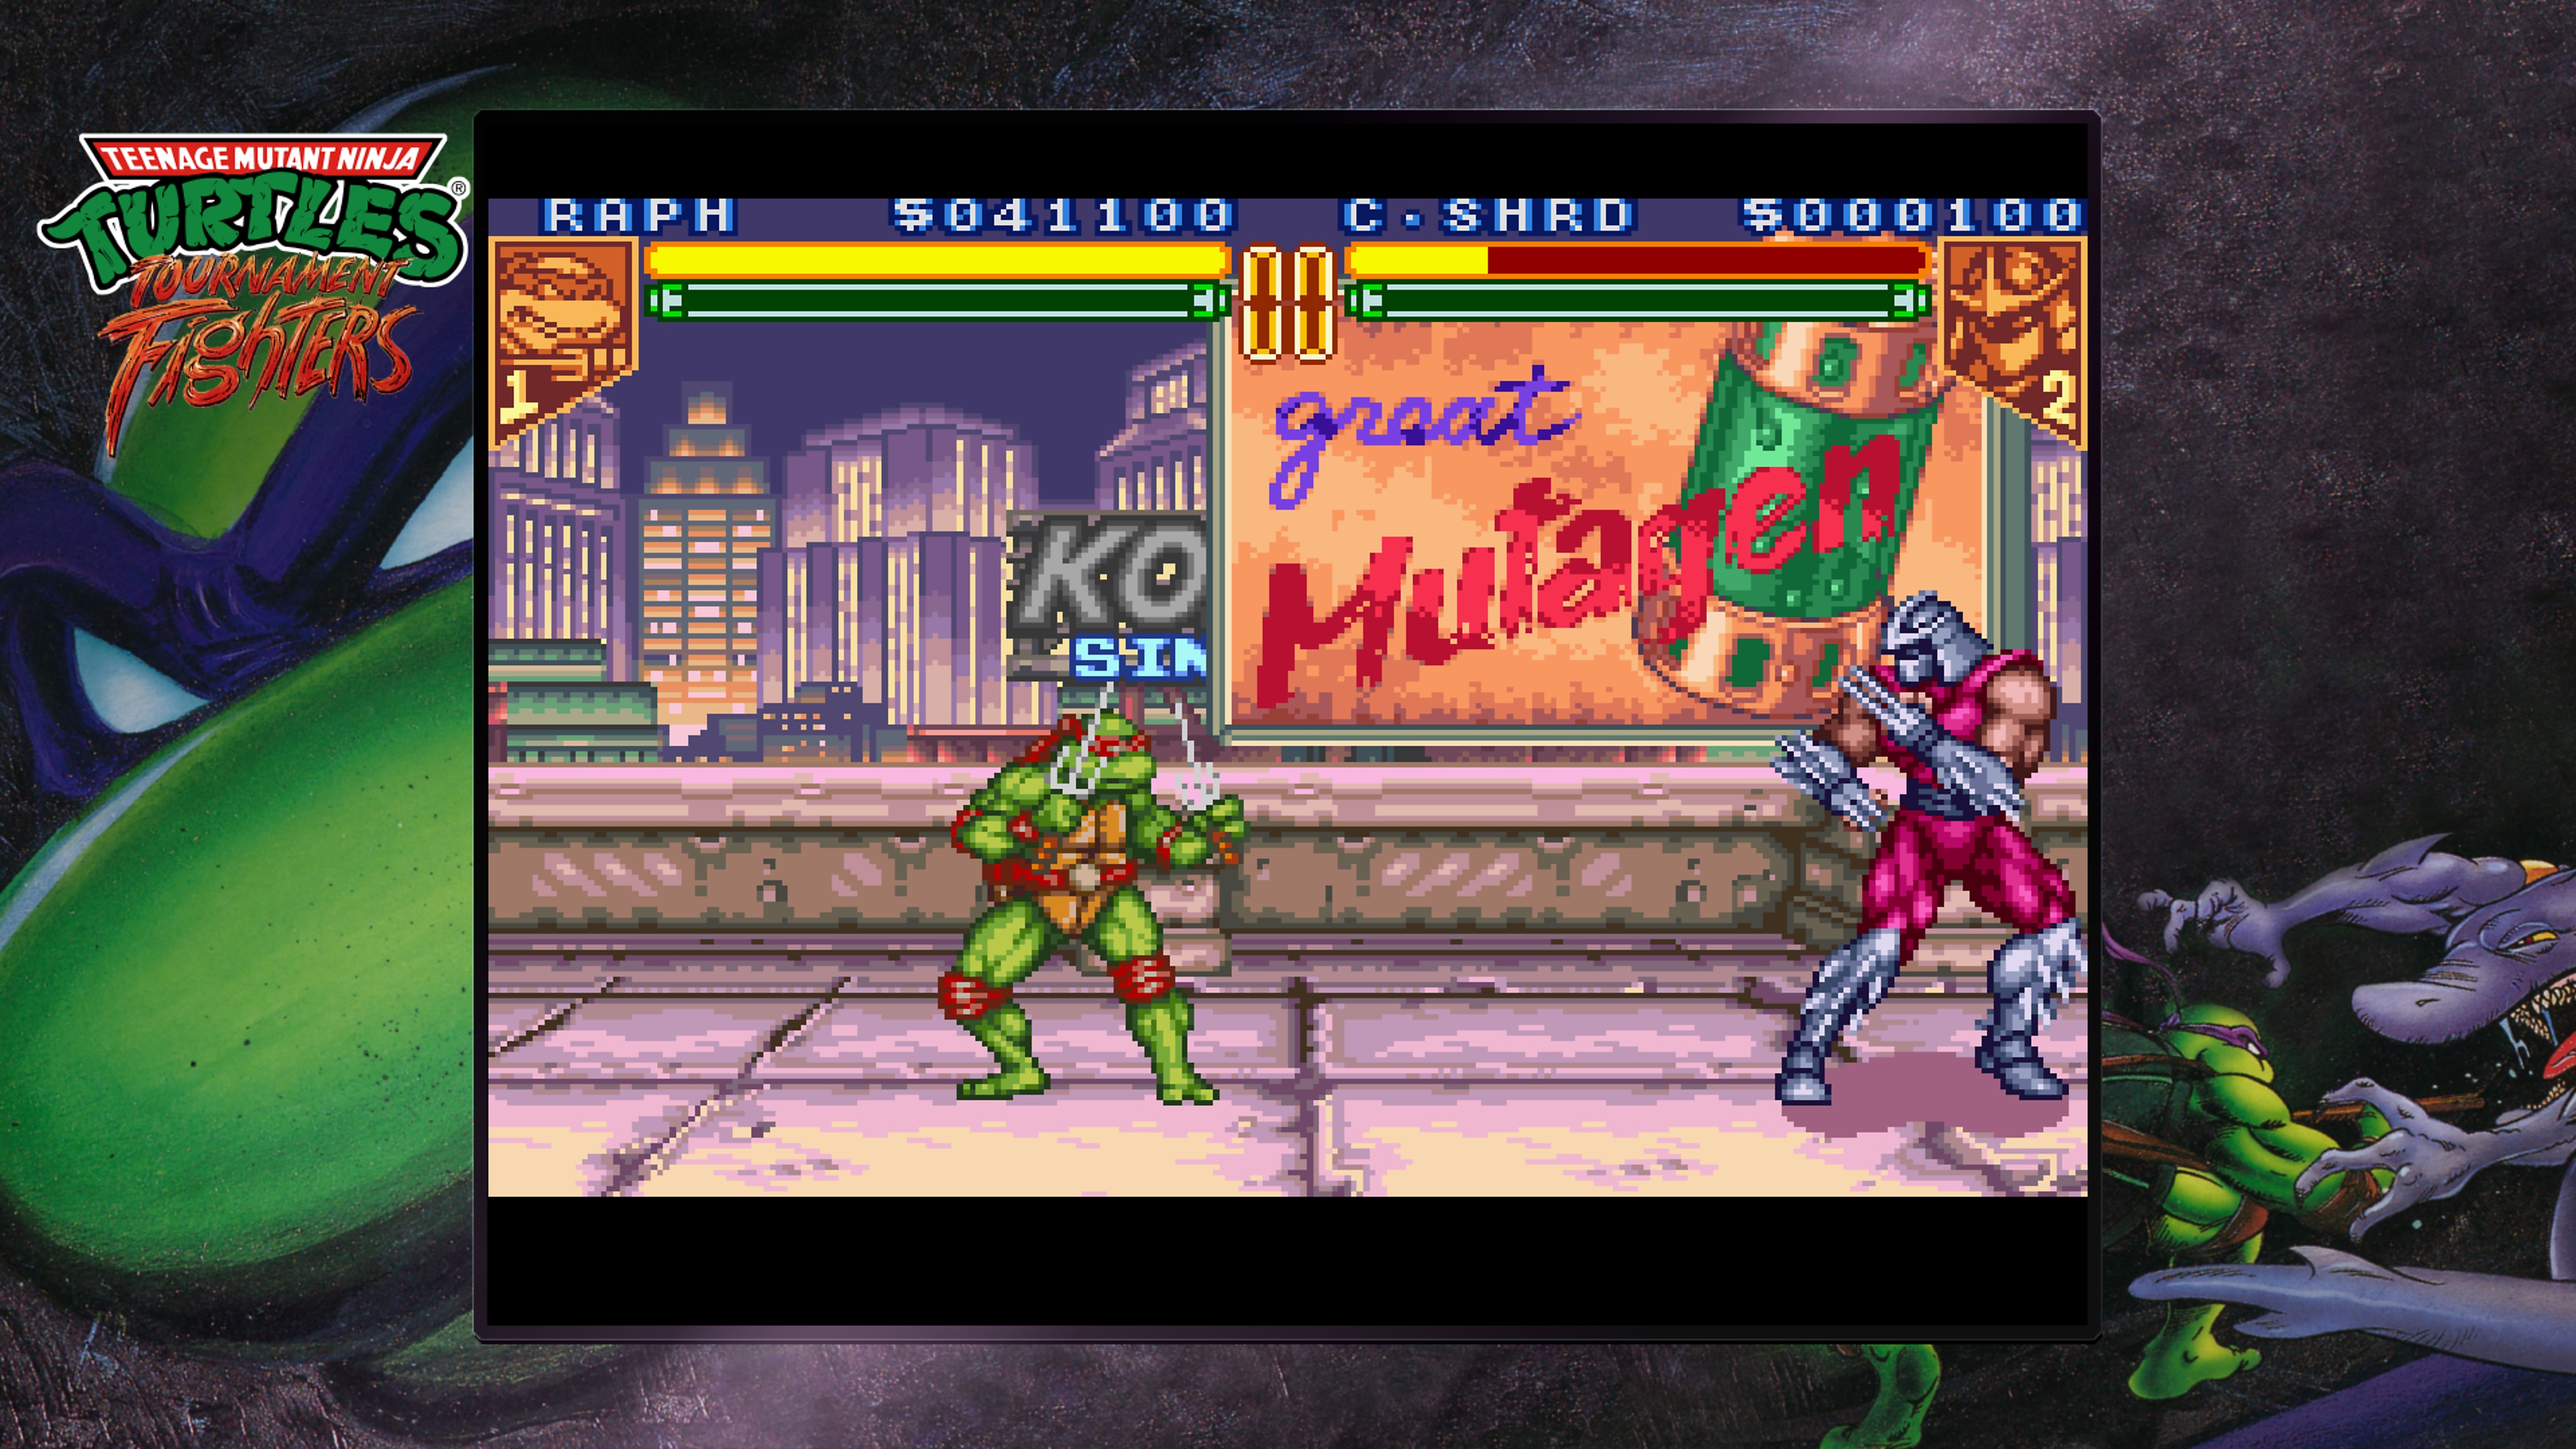 Teenage Mutant Ninja Turtles Collection - Tournament Fighters, screenshot met Raphael die met Shredder vecht op een dak